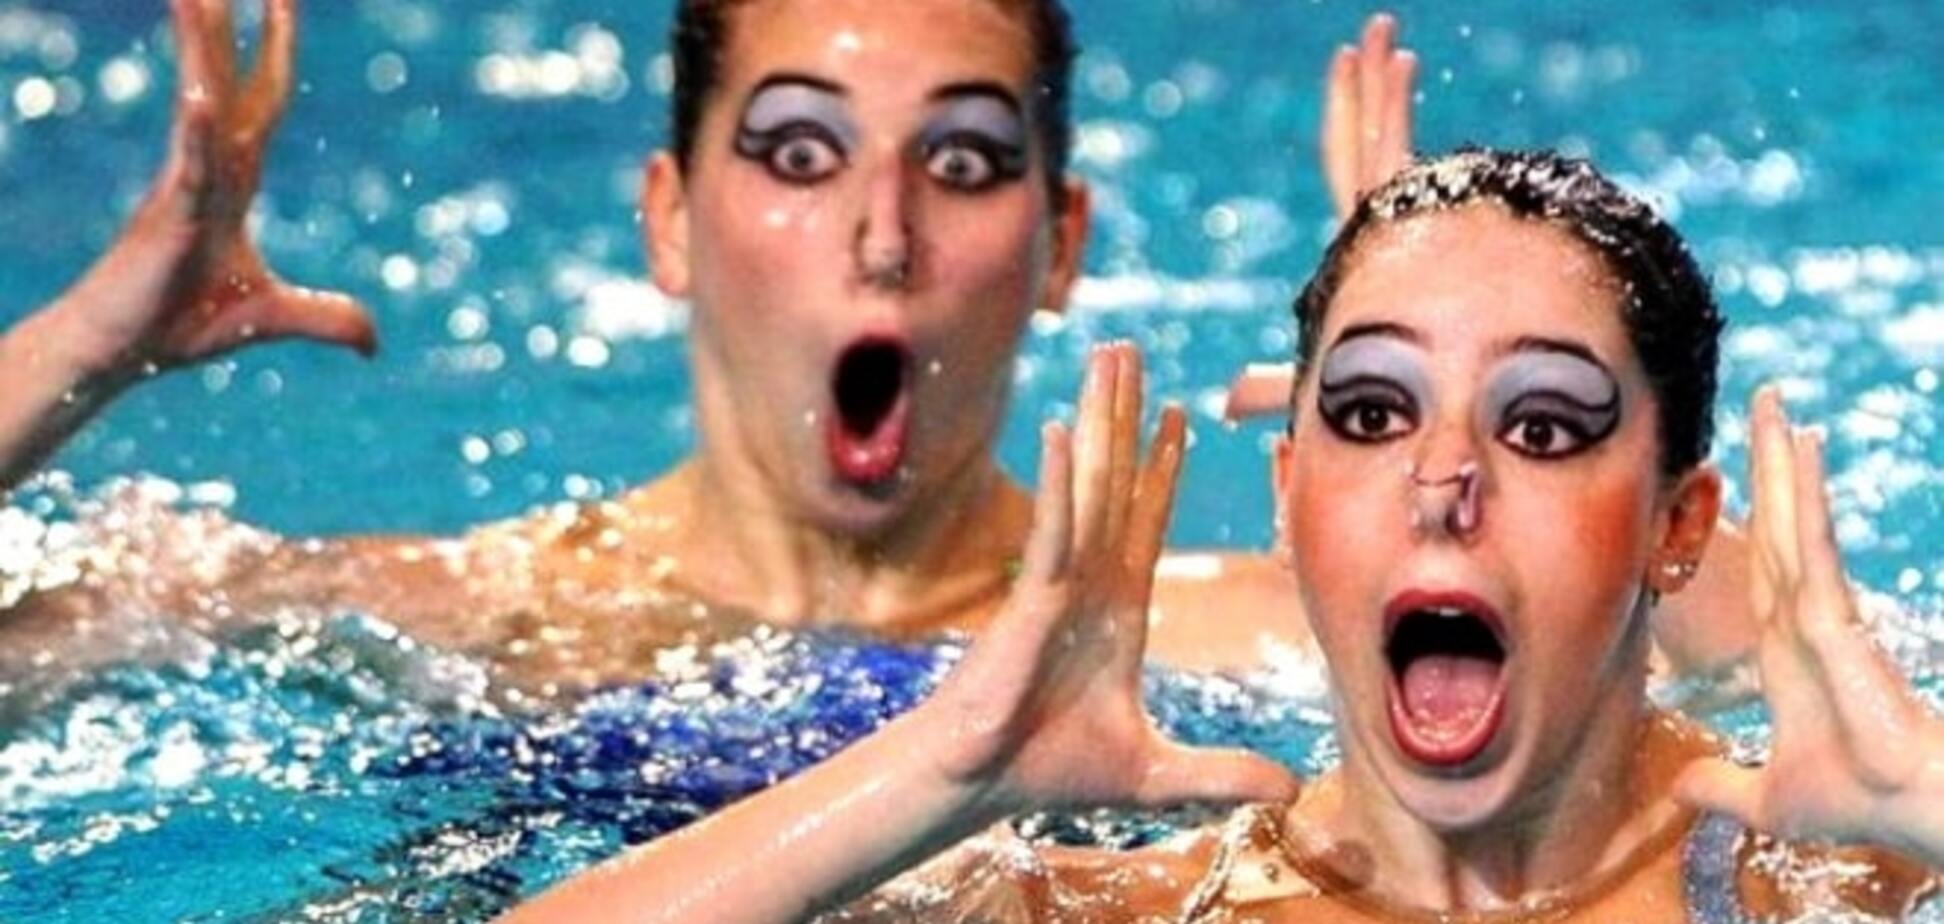 Стоп-кадр: смішні фотографії плавчих б'ють рекорди в соцмережах